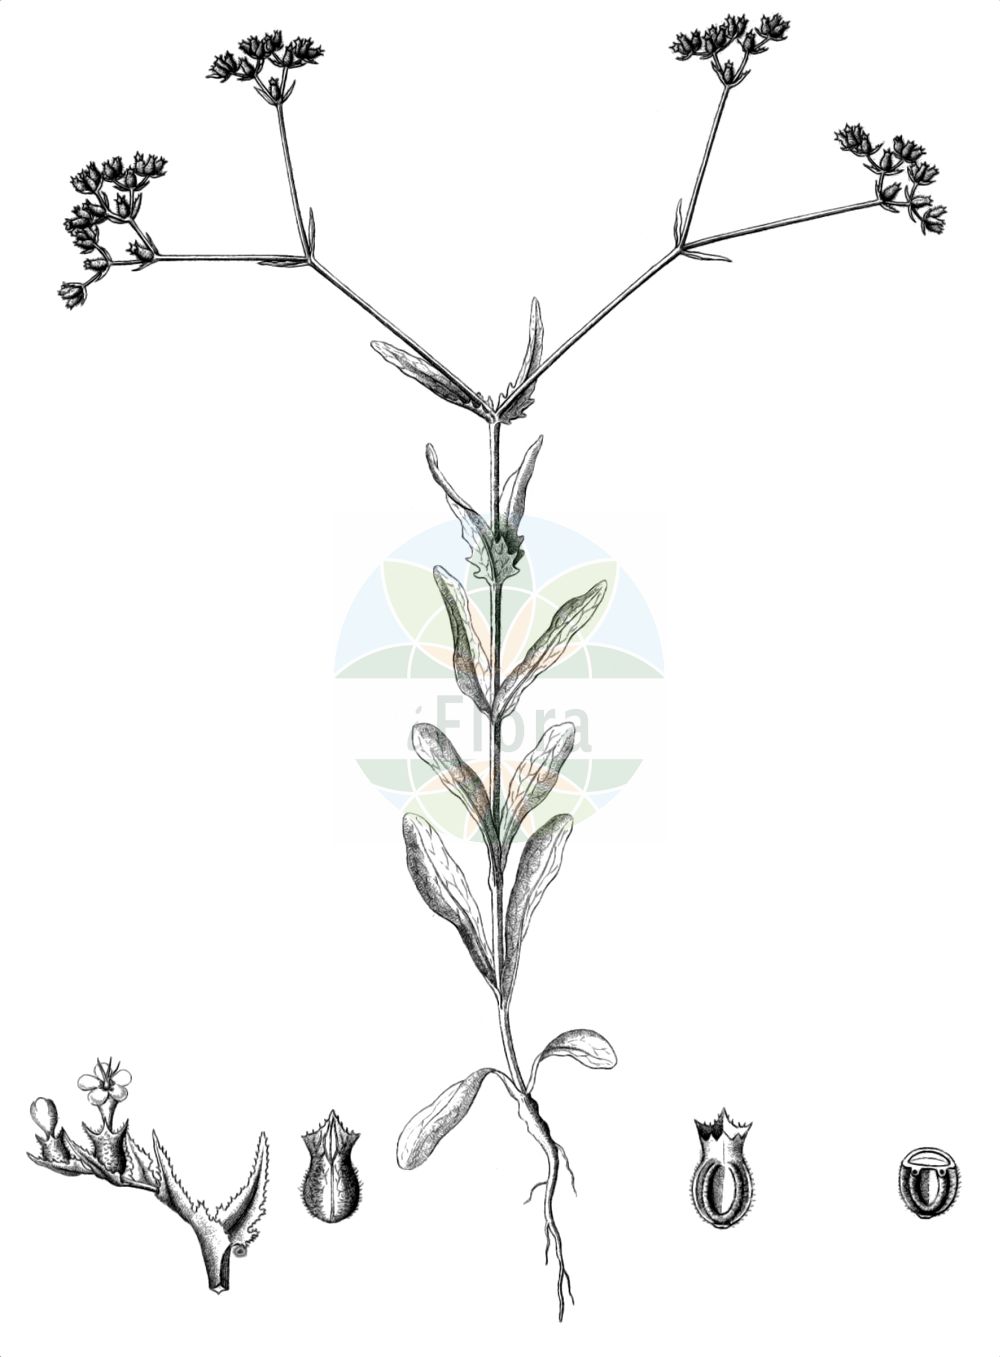 Historische Abbildung von Valerianella eriocarpa (Wollfrüchtiger Feldsalat - Hairy-fruited Cornsalad). Das Bild zeigt Blatt, Bluete, Frucht und Same. ---- Historical Drawing of Valerianella eriocarpa (Wollfrüchtiger Feldsalat - Hairy-fruited Cornsalad). The image is showing leaf, flower, fruit and seed.(Valerianella eriocarpa,Wollfrüchtiger Feldsalat,Hairy-fruited Cornsalad,Fedia muricata,Fedia truncata,Valerianella eriocarpa,Valerianella ibizae,Valerianella muricata,Valerianella truncata,Wollfruechtiger Feldsalat,Hairy-fruited Cornsalad,Italian Corn Salad,Valerianella,Rapunzel,Cornsalad,Caprifoliaceae,Geißblattgewächse,Honeysuckle family,Blatt,Bluete,Frucht,Same,leaf,flower,fruit,seed,Reichenbach (1823-1832))